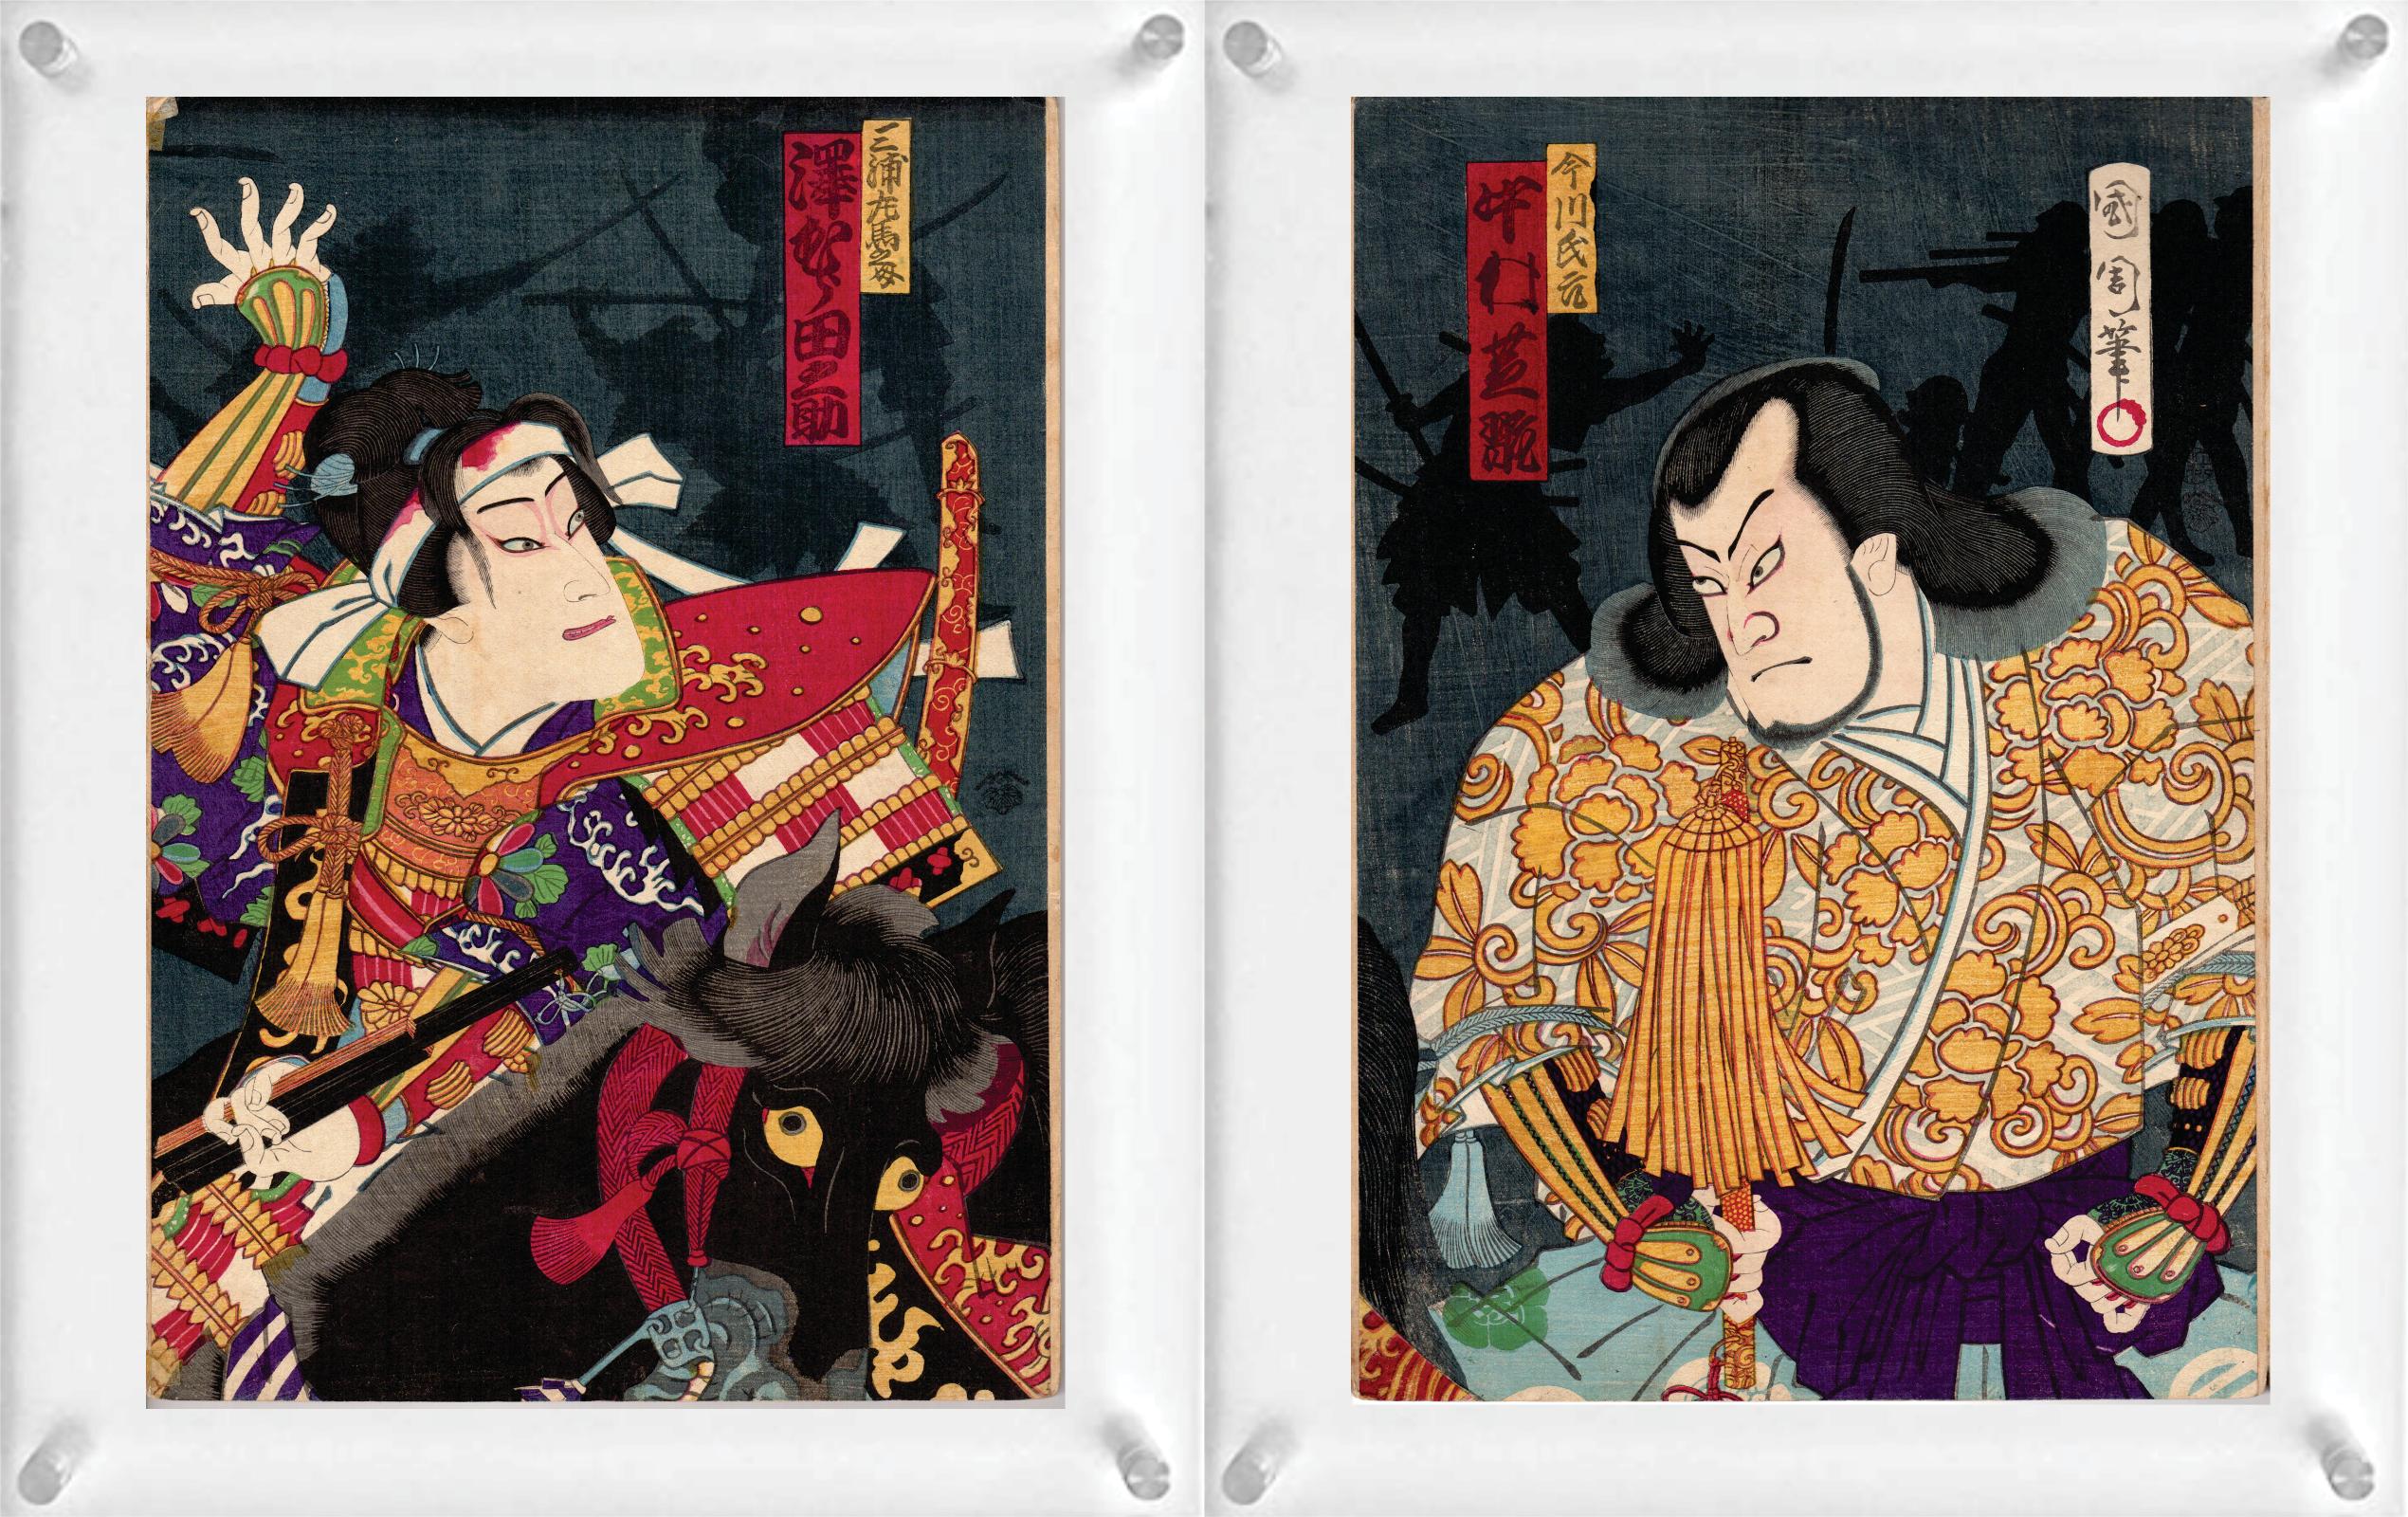 4 japanische Farbholzschnitte (Doppelseite) von Toyohara Kunichika (Diptychon) und Shosai Ikkei - aus Sechsunddreißig Comics der berühmten Orte von Tokio.

Hinweis: Es handelt sich nur um zwei Holzschnitte mit 4 Bildern. Sie sind doppelseitig mit